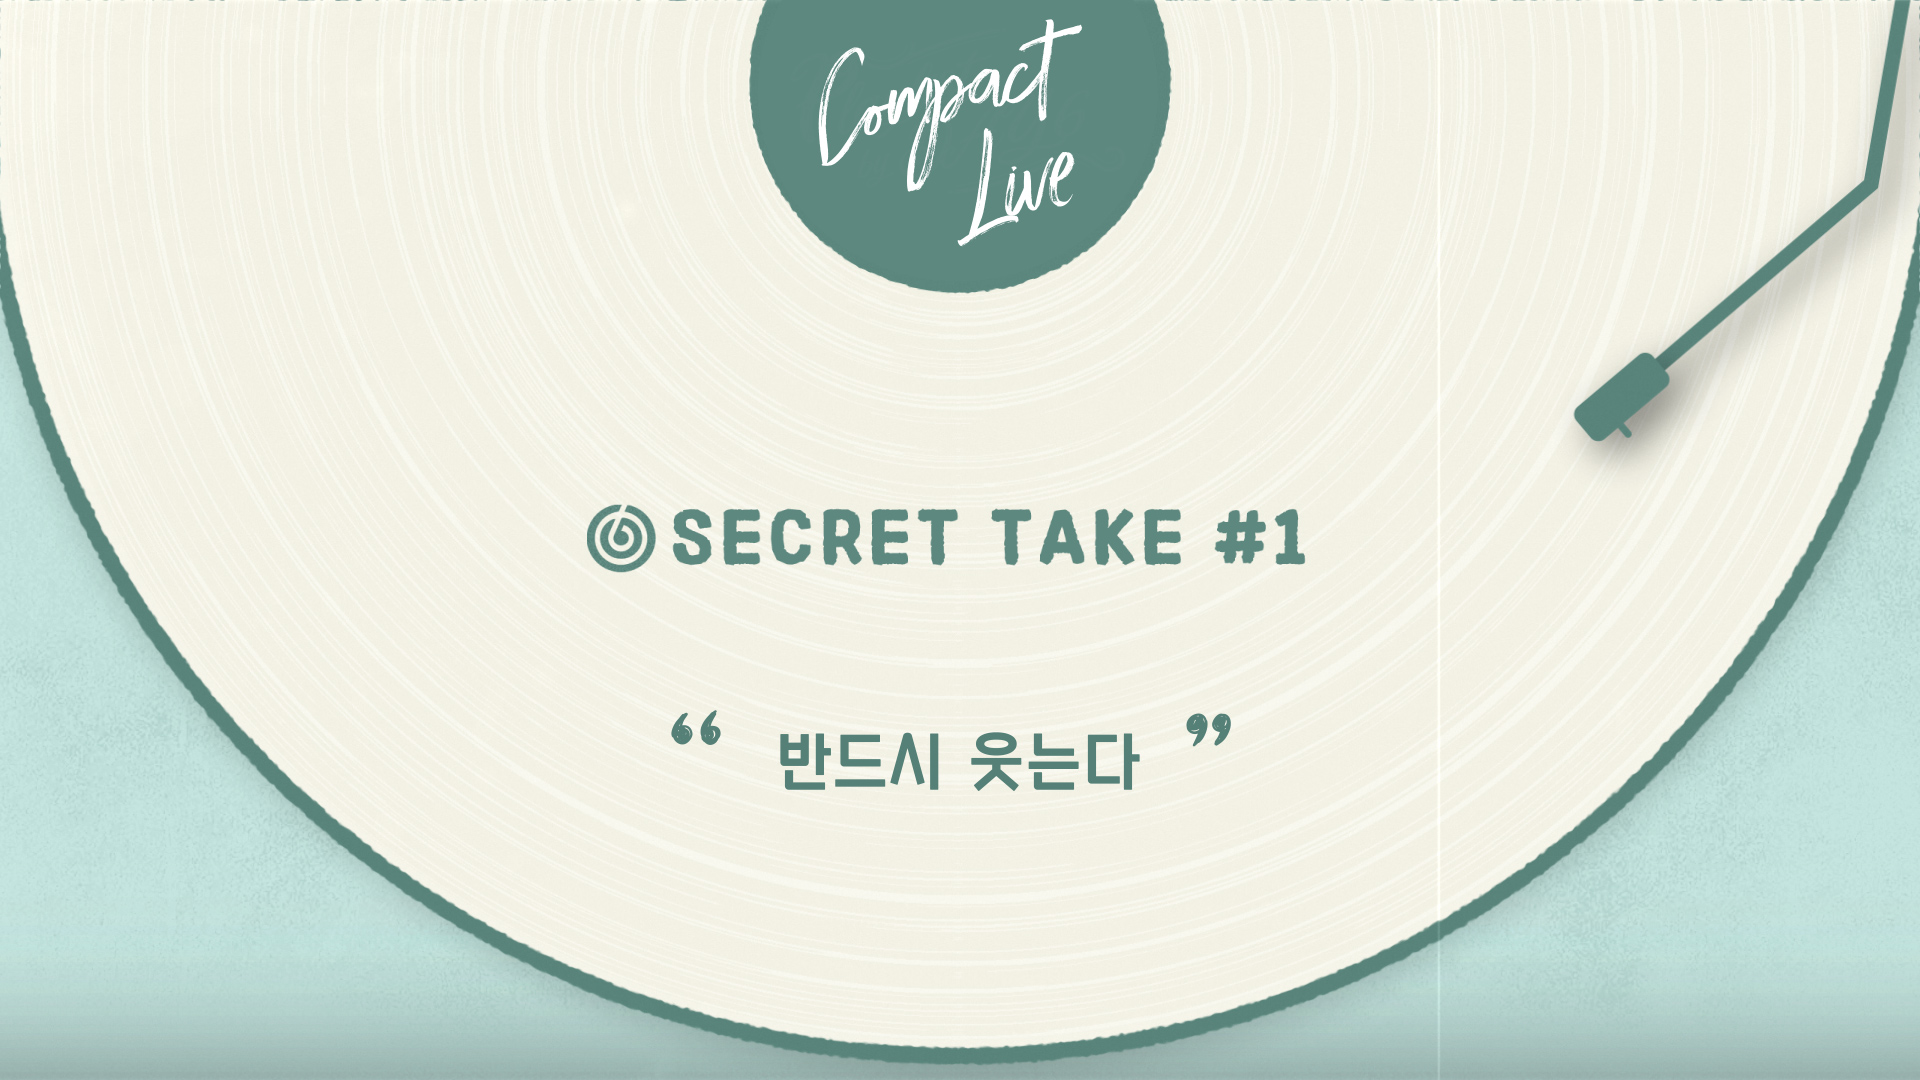 [Compact Live] SECRET TAKE #1 DAY6 "반드시 웃는다"